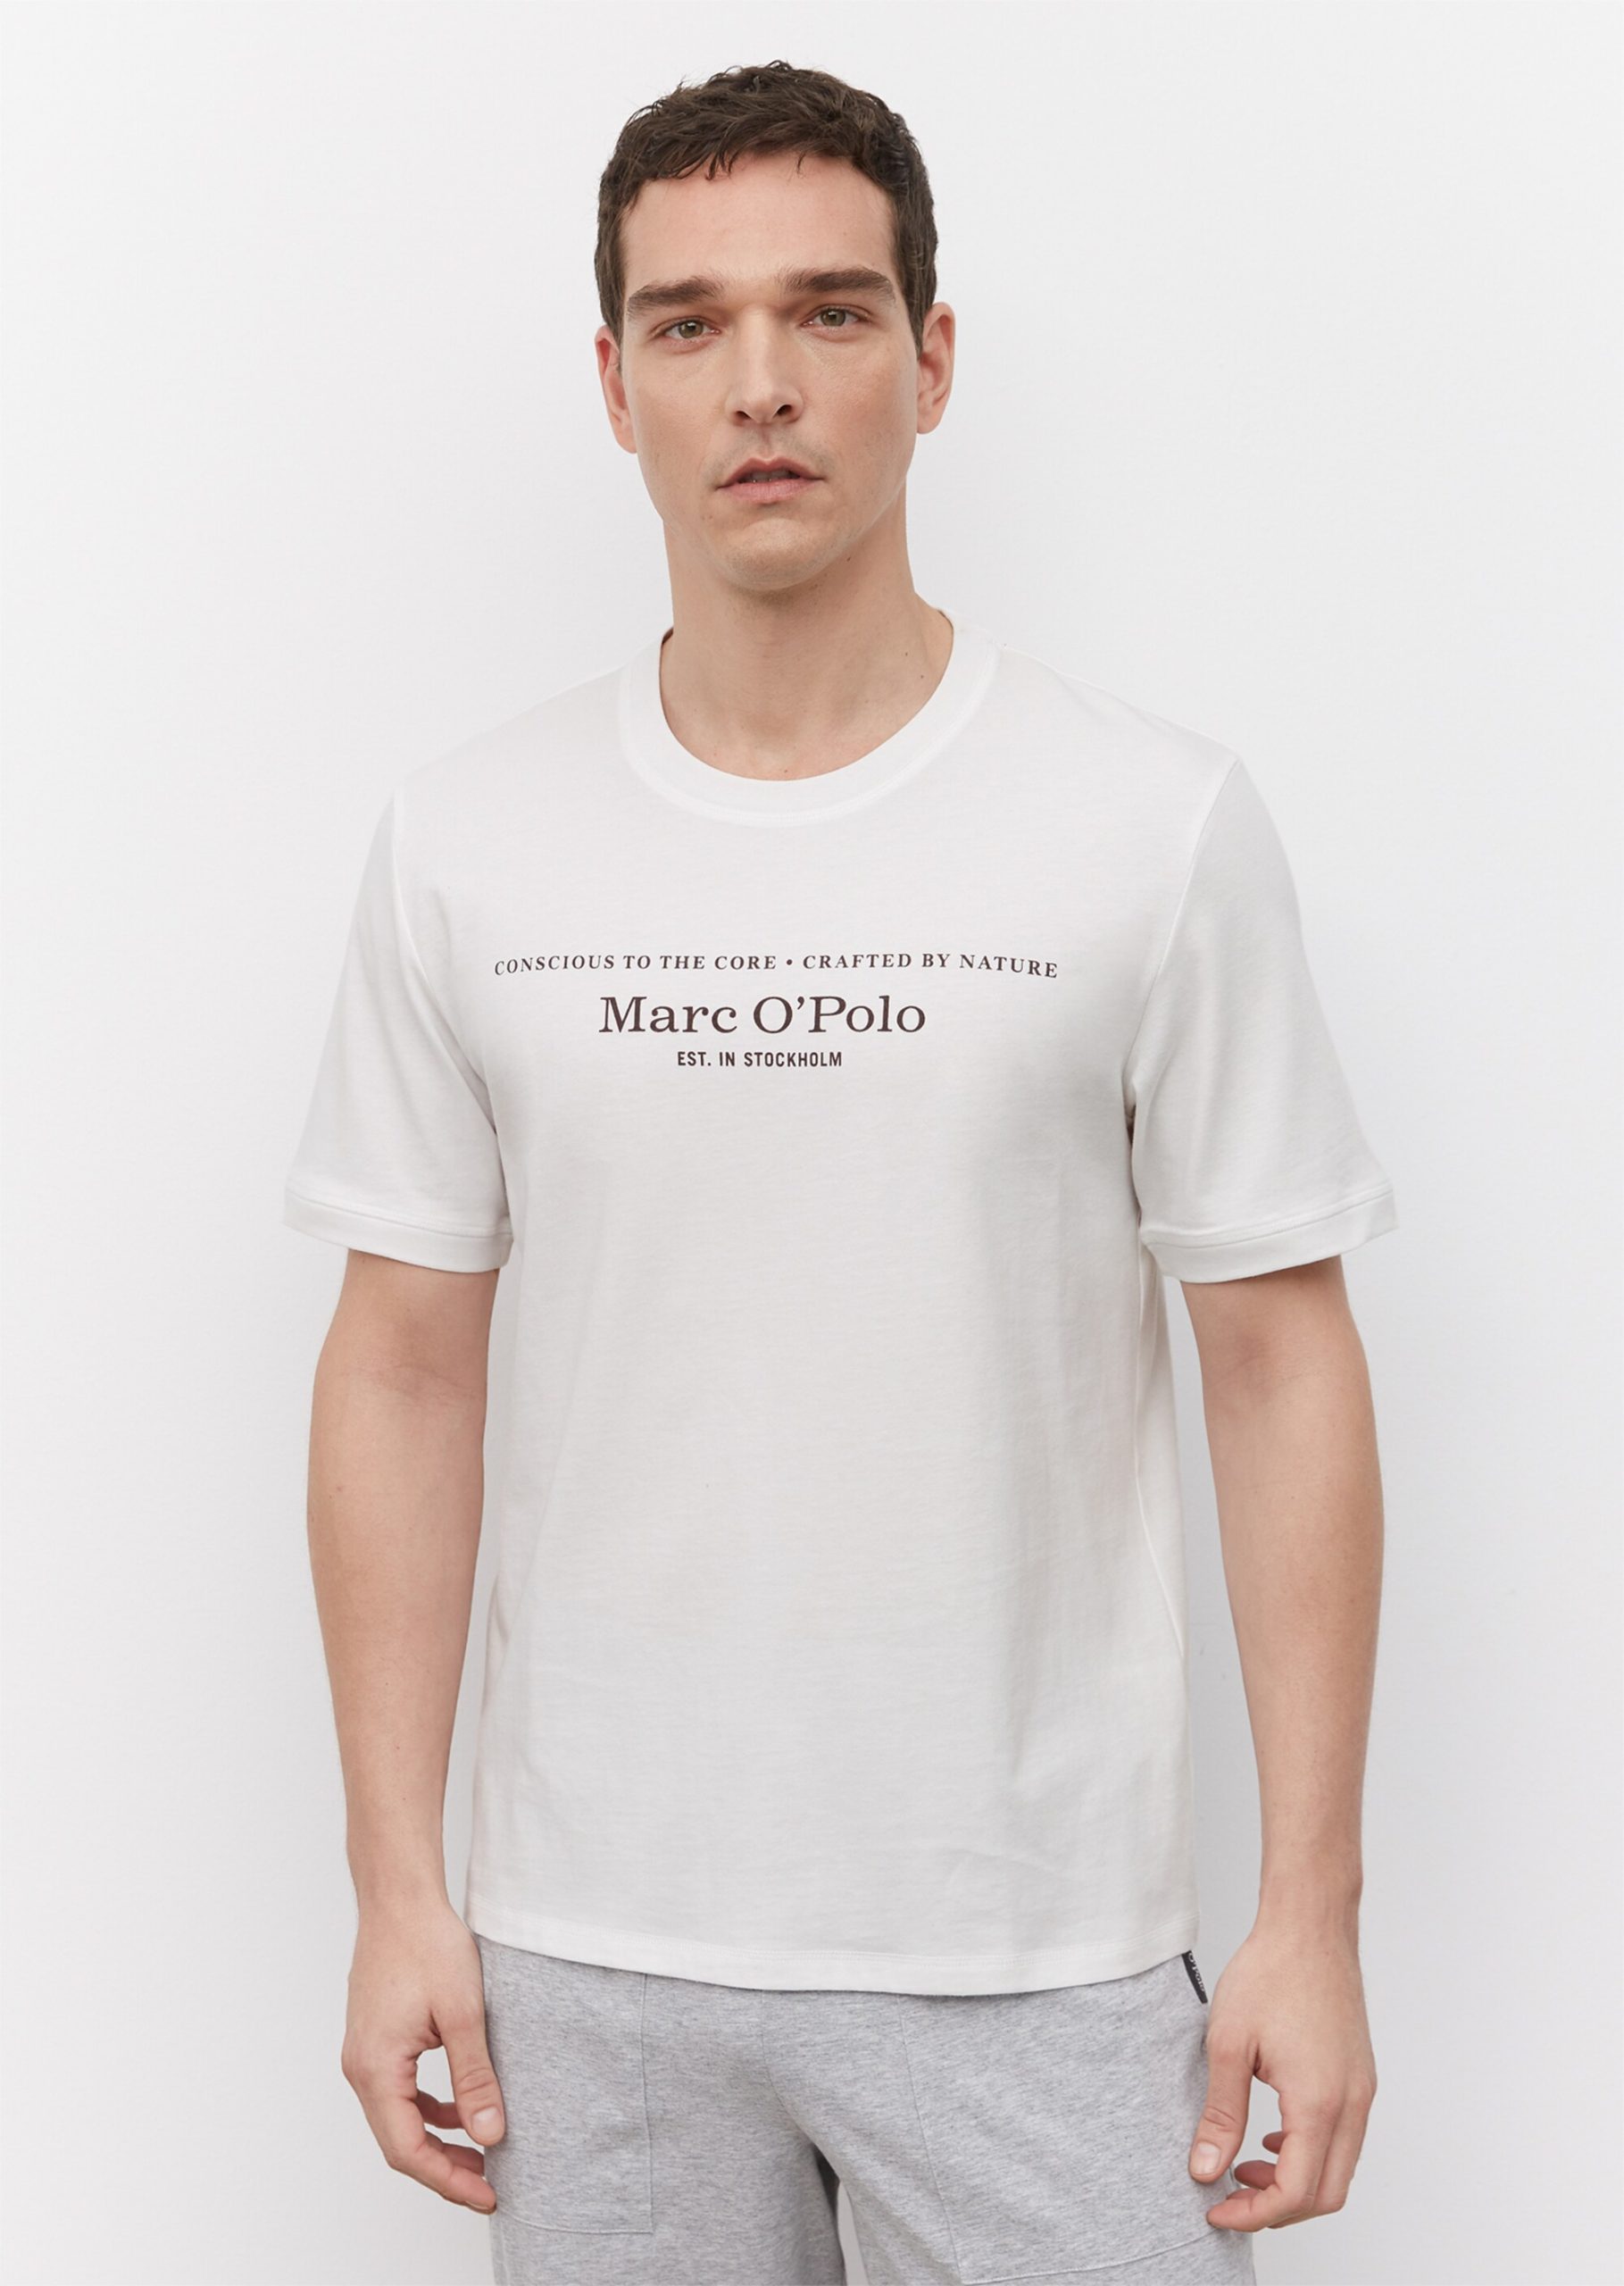 Marc O’Polo T-shirts